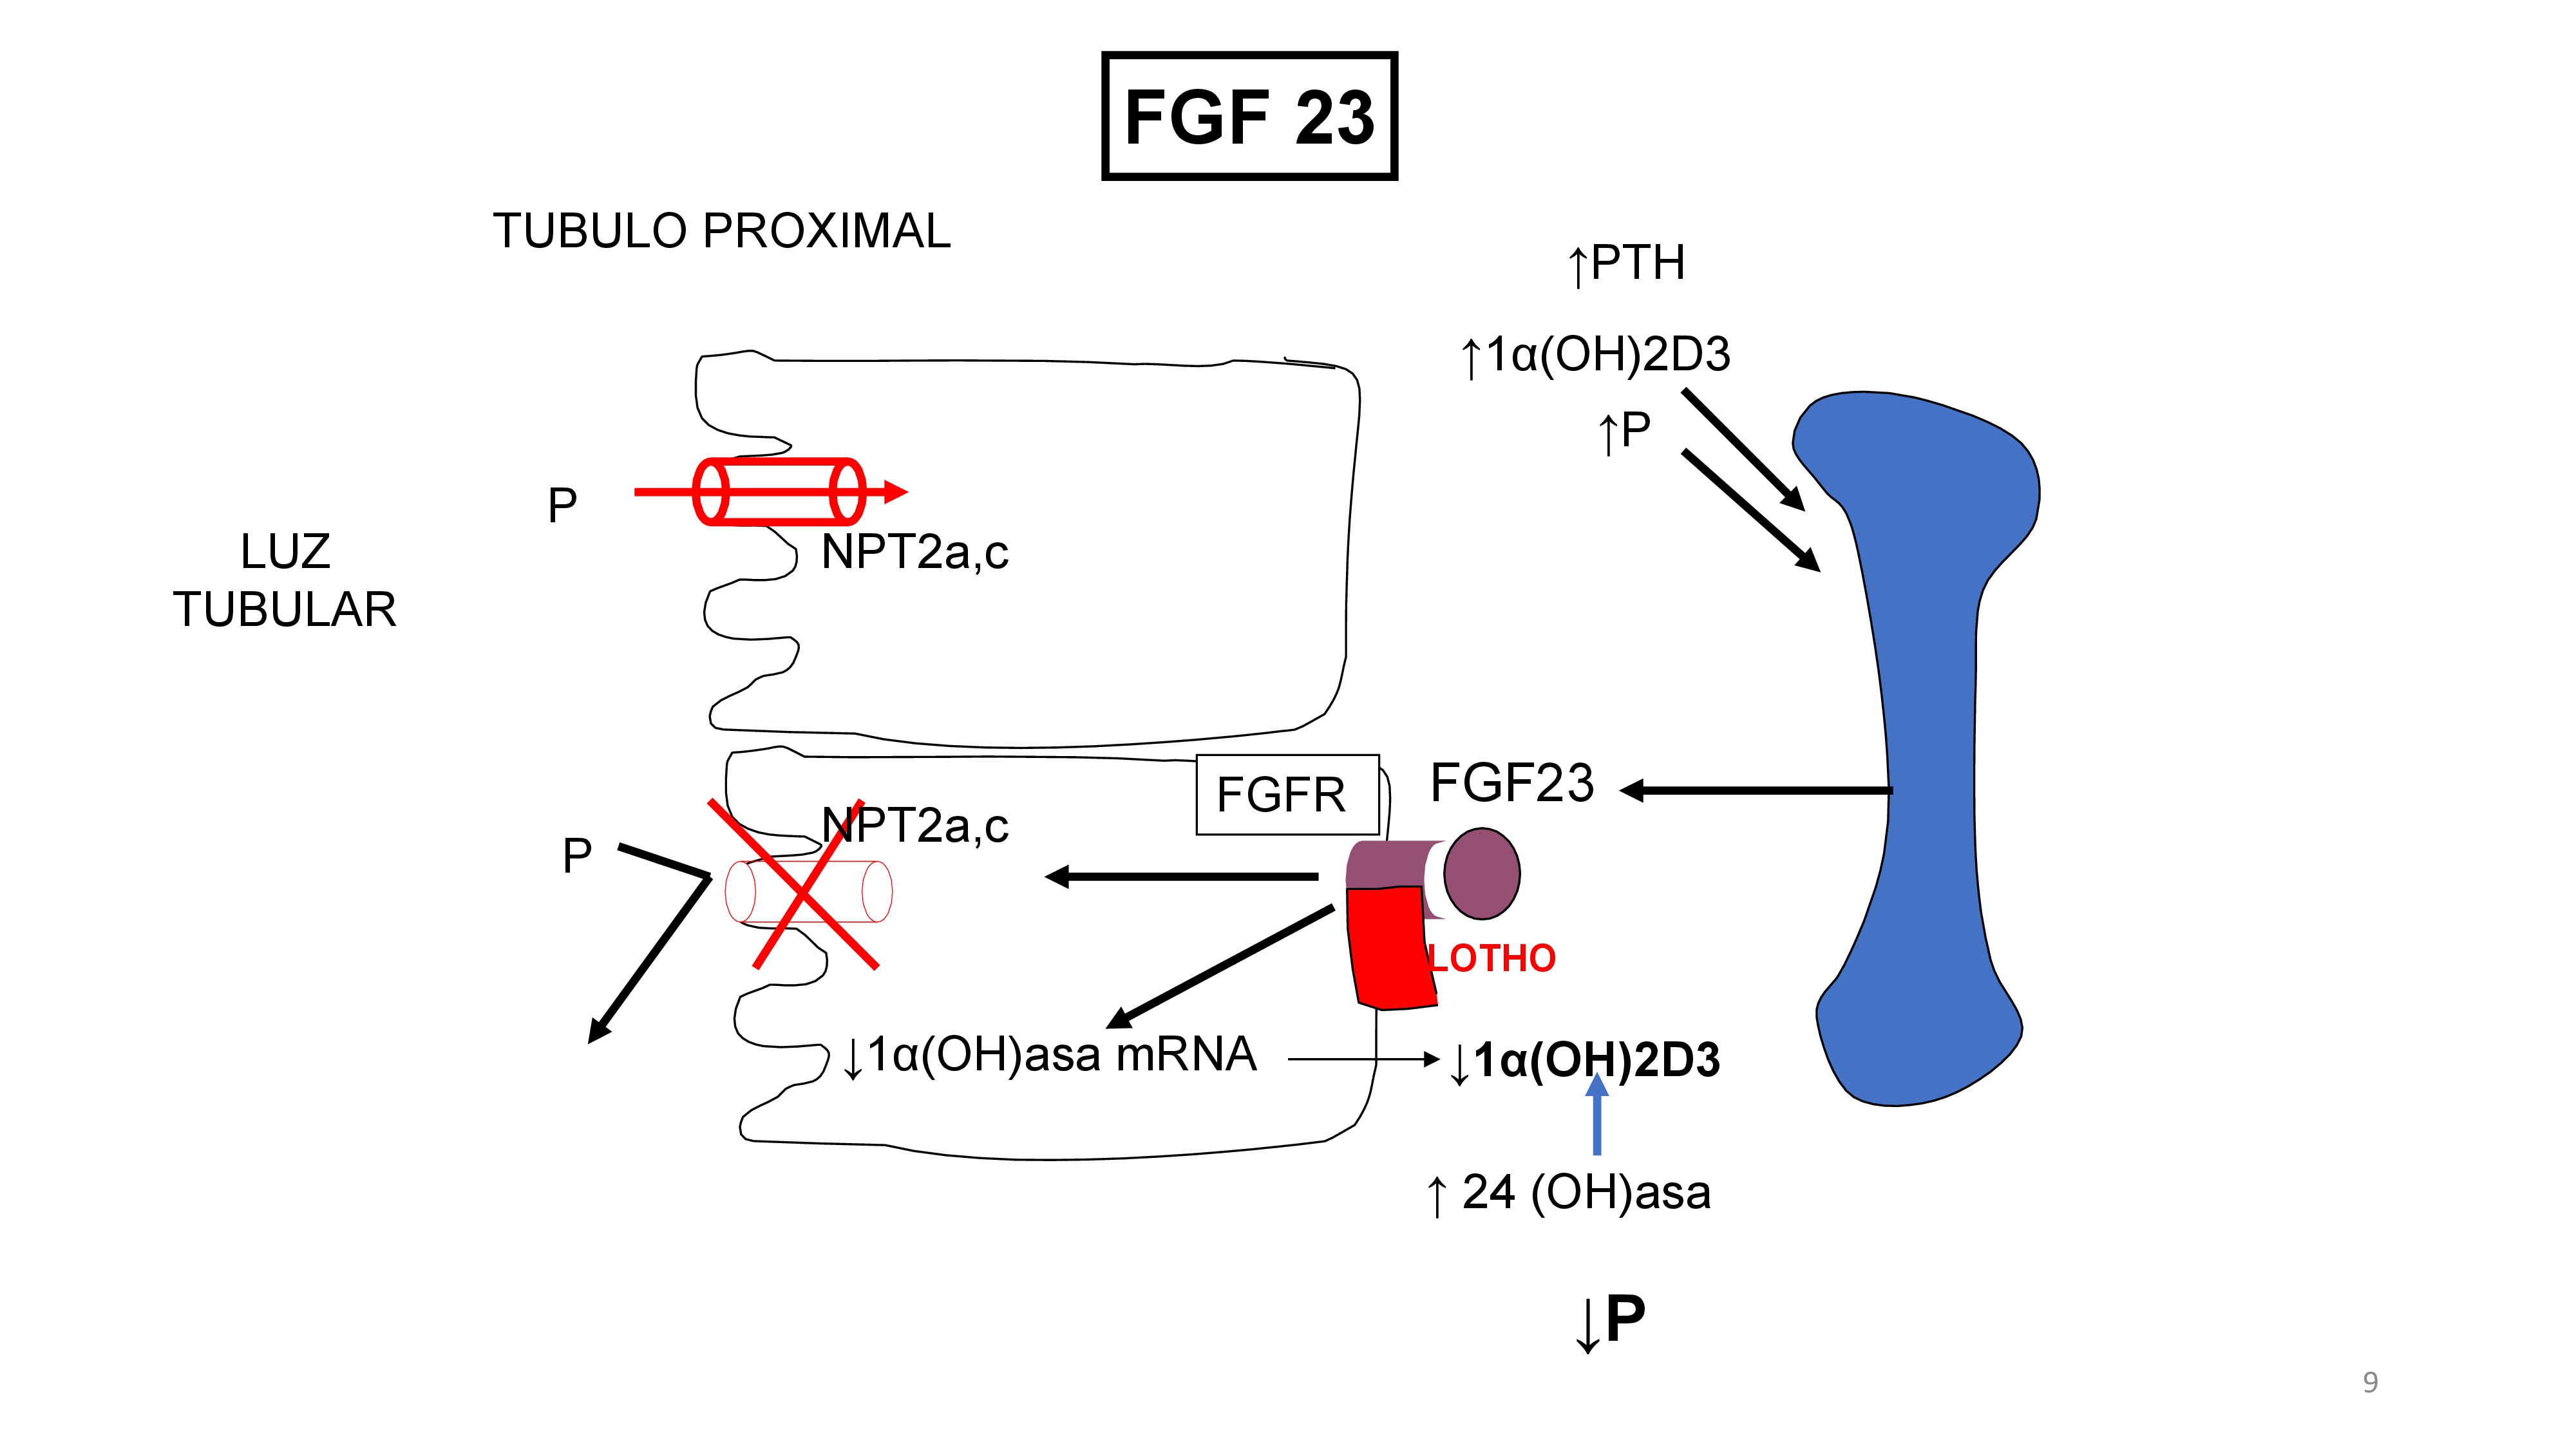 El fosforo, calcitriol y PTH estimulan la producción de FGF23, el hueso libera FGF23 que actúa en su receptor especifico, el FGFR que necesita la presencie de la molécula Klotho para optimizar la unión del FGF23 con su receptor. La acción de FGF23 en el túbulo proximal es : 1-reduce la presencia del transportador de P (NPT2a,c) en la membrana de la célula disminuyendo la reabsorción tubular de P. 2-Disminuye la 1a(OH)asa mRNA lo cual reduce la produccion de 1-25 (OH)2D3 (Calcitriol). Ademas también aumenta la degradación de 1,25(OH) 2D3 mediante el estímulo de la enzima 24-hidroxilasa